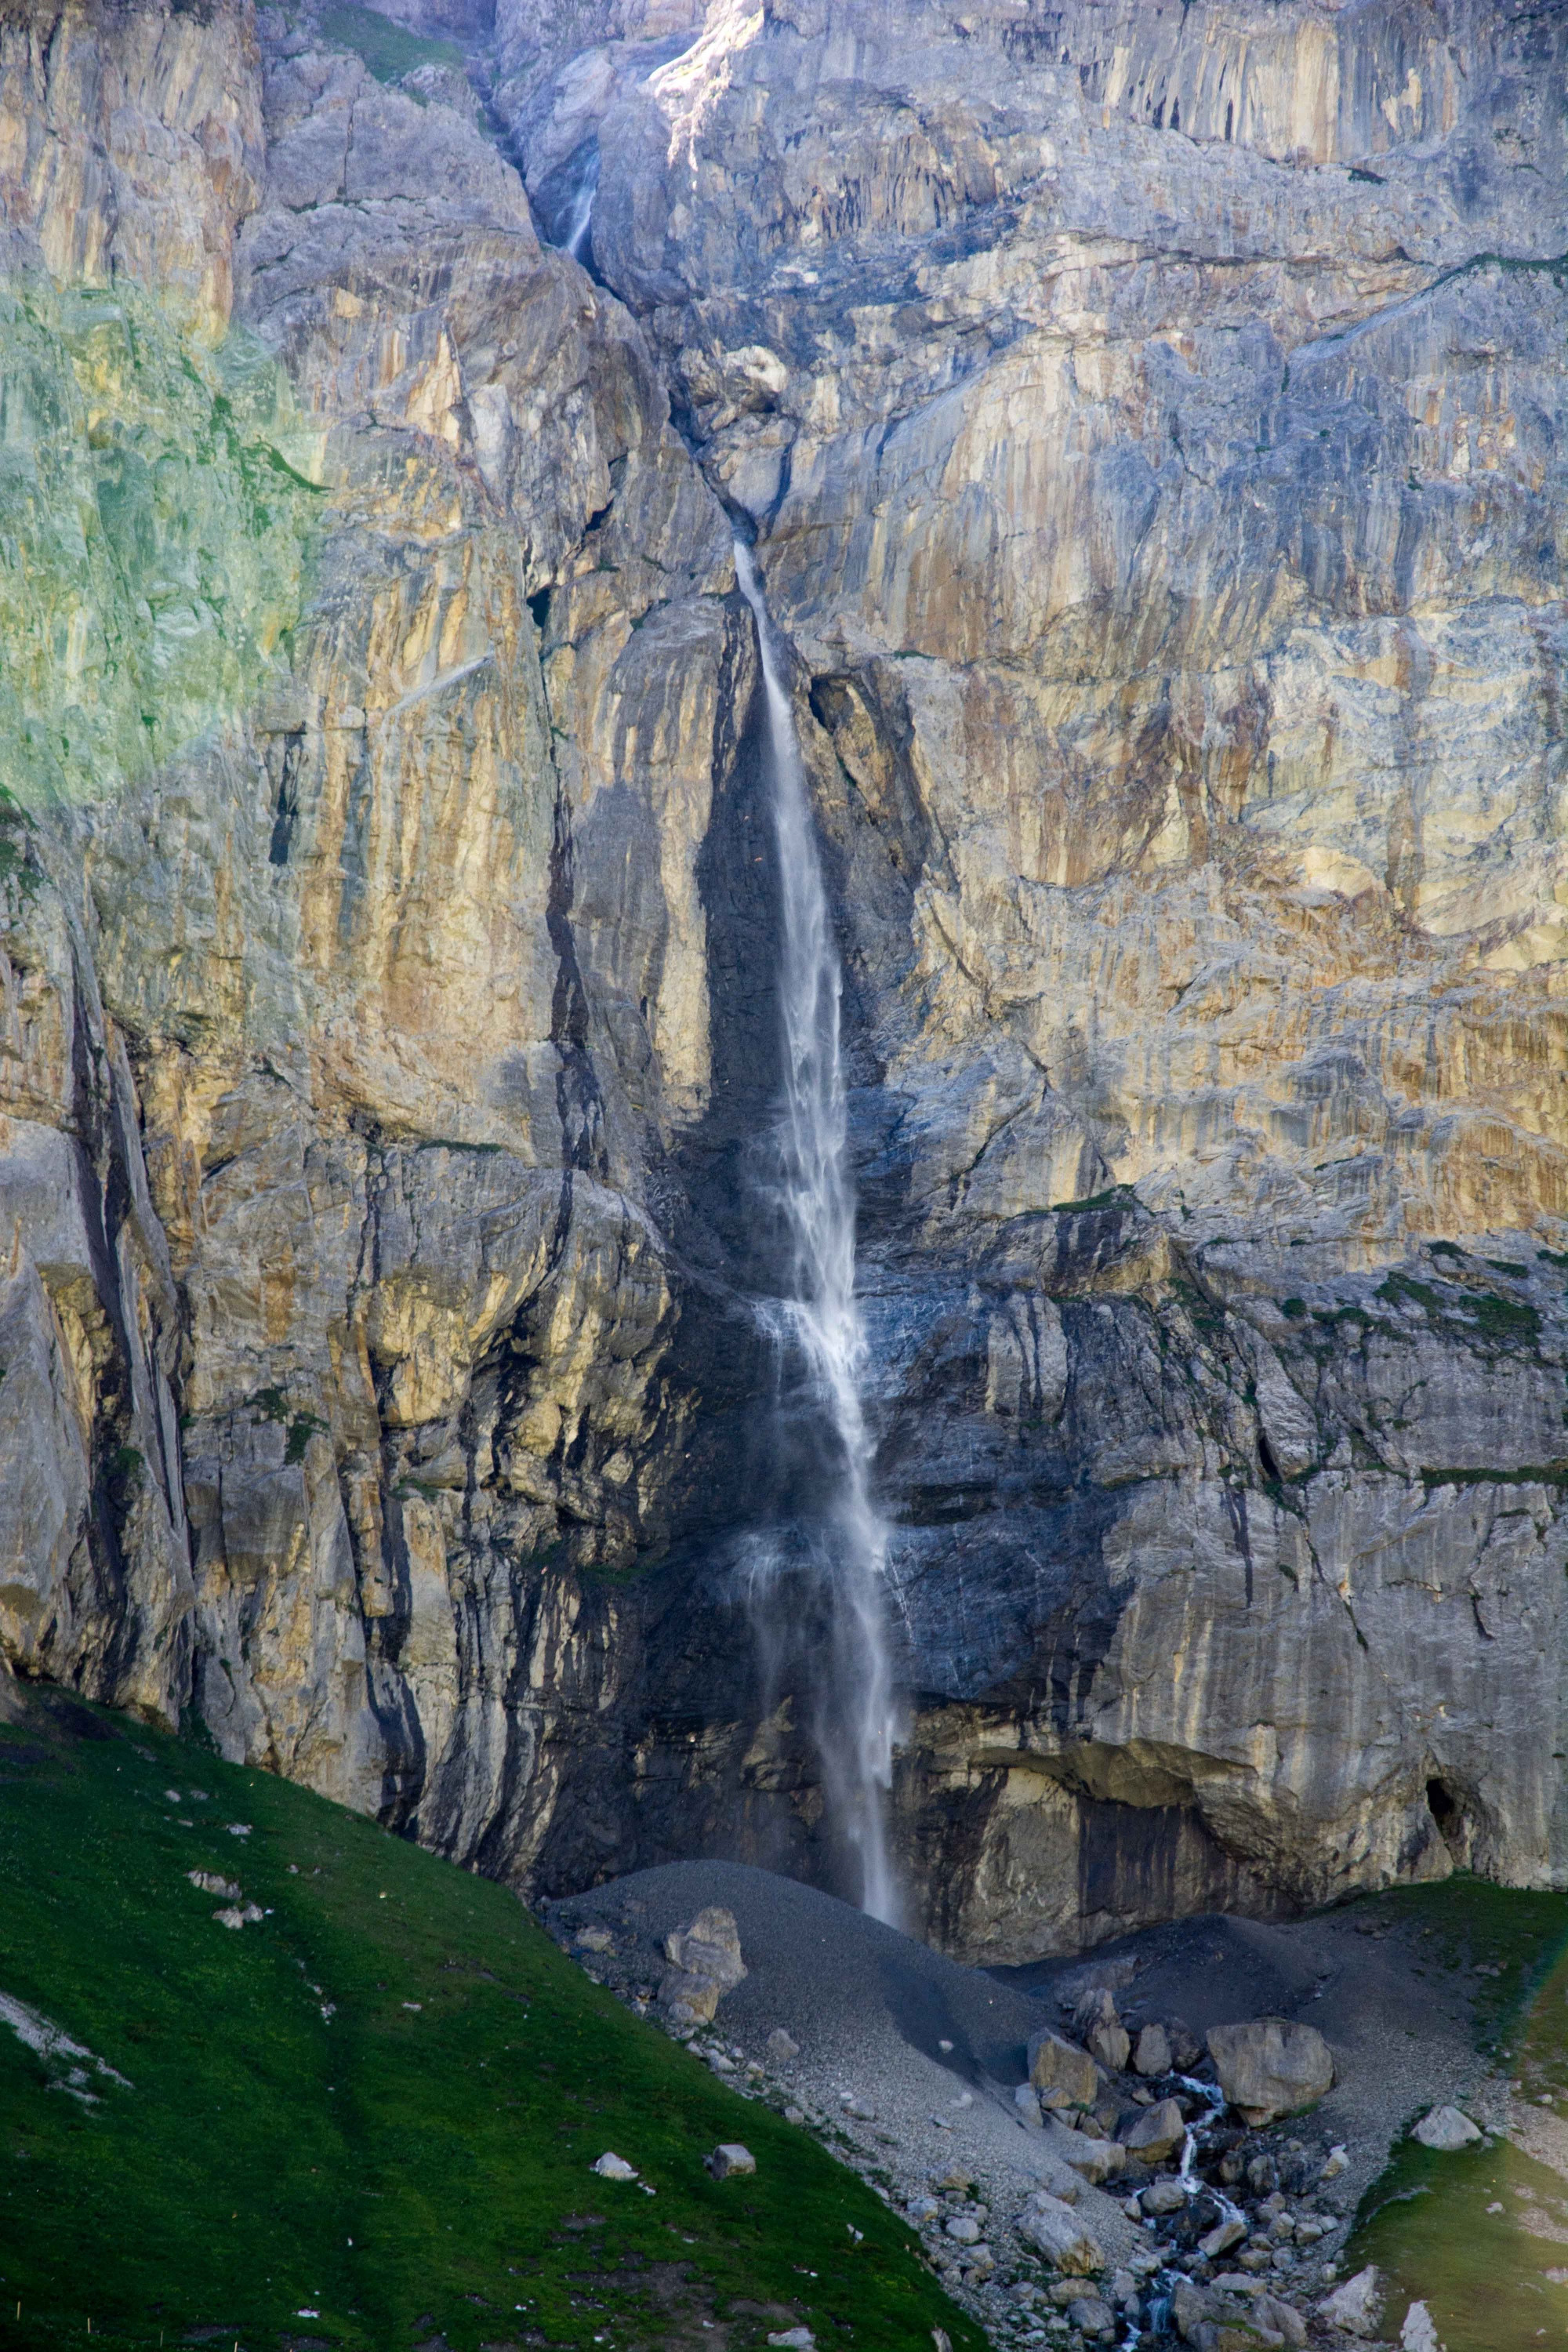 Flätschbach Waterfall